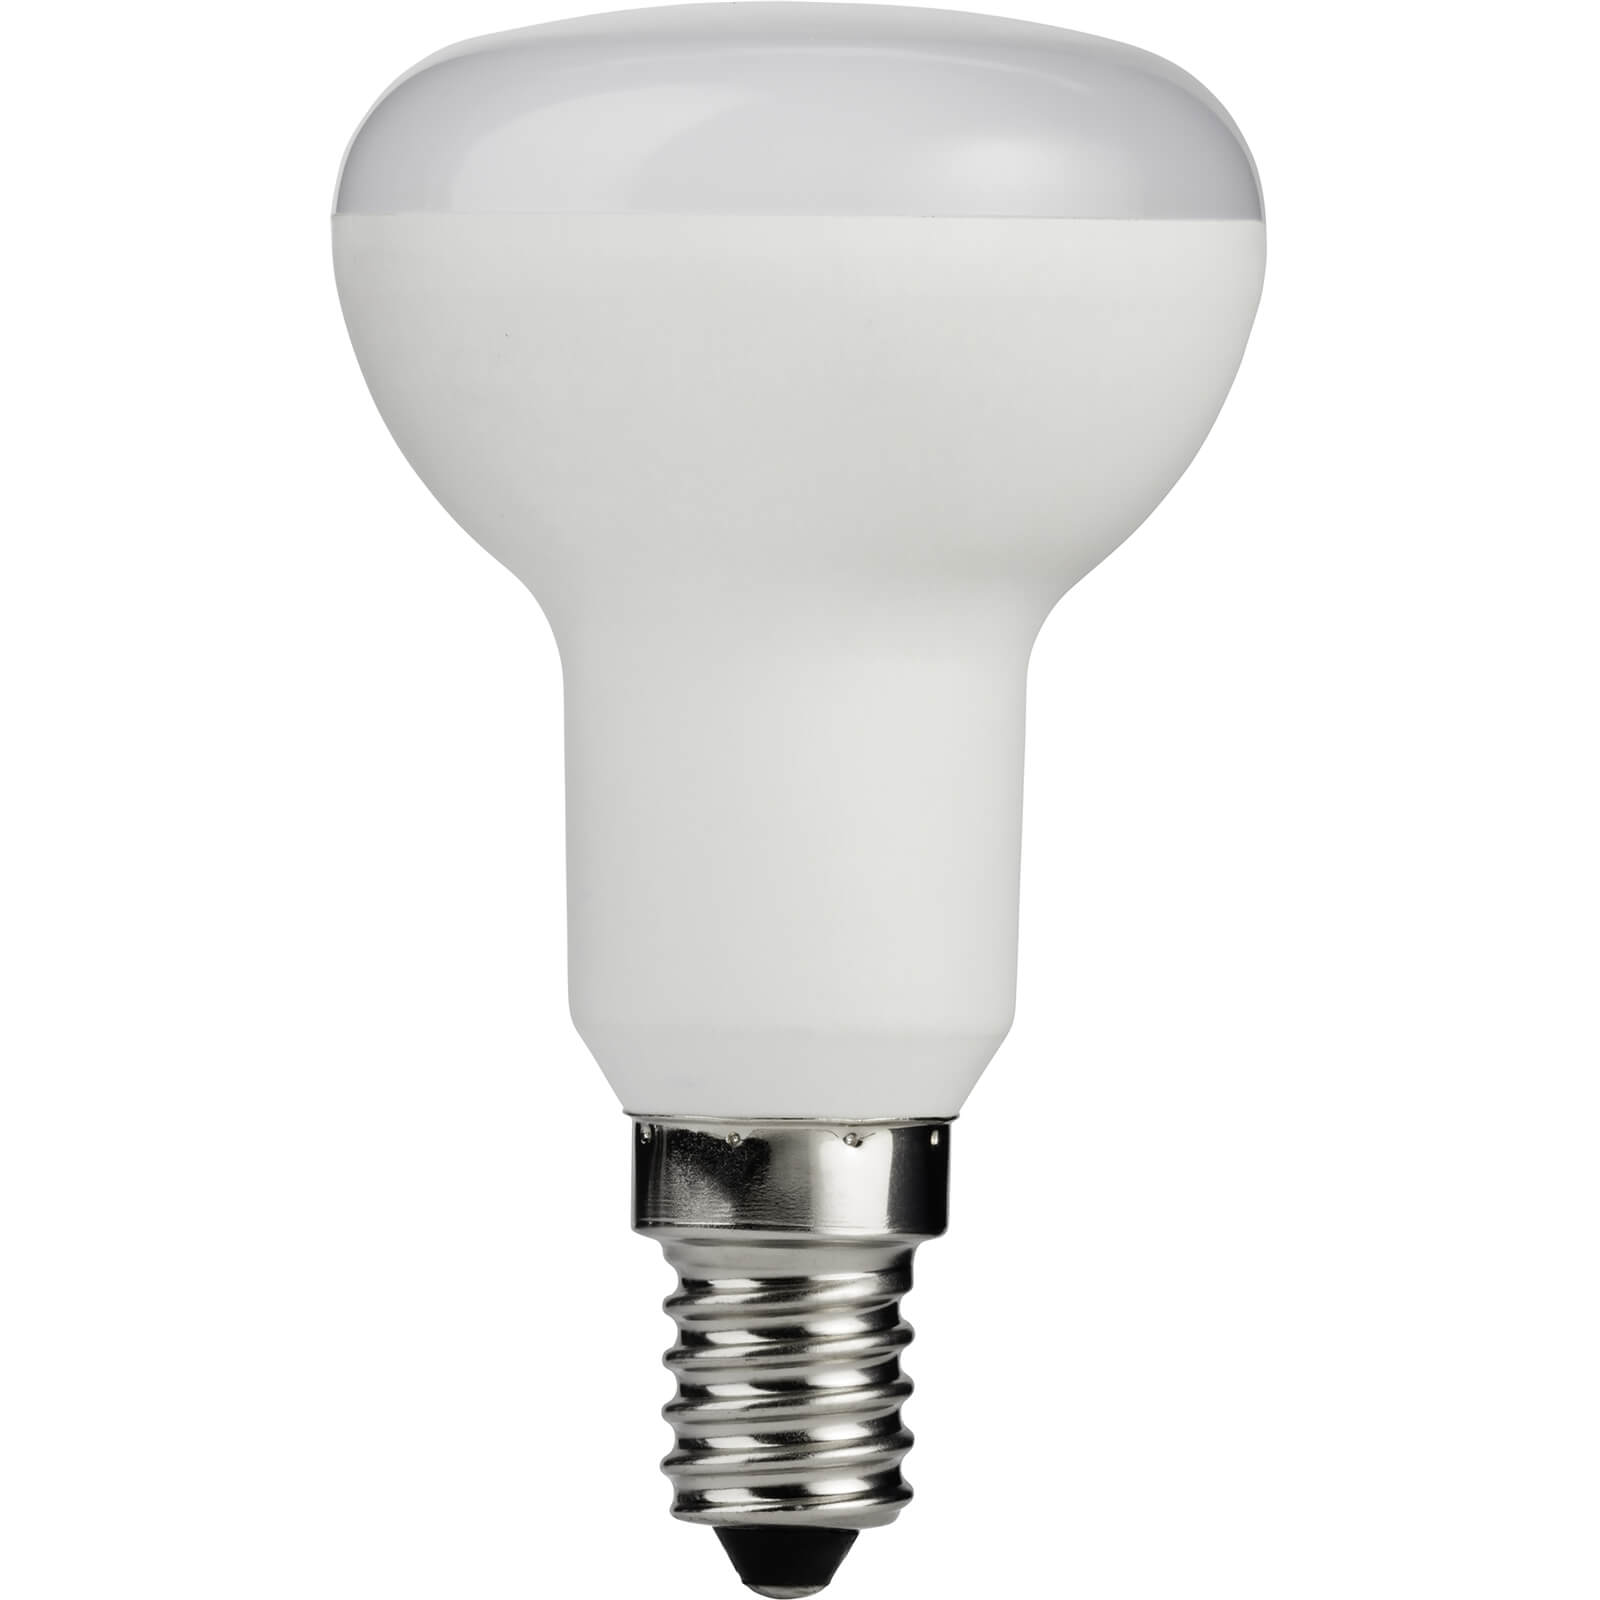 White R50 SES 4.7W LED Light Bulb